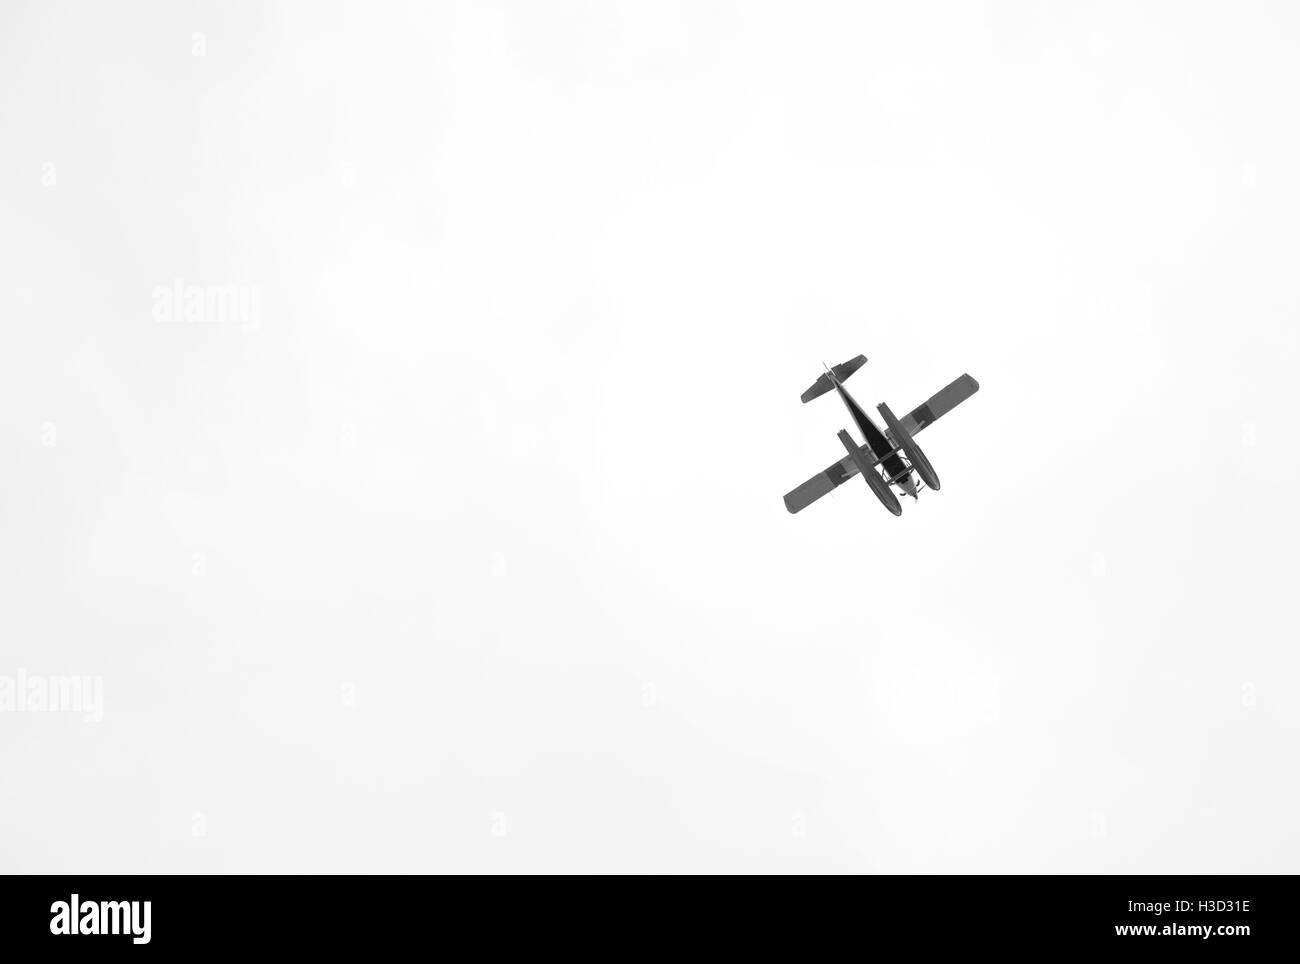 Niedrigen Winkel Ansicht von Wasserflugzeug fliegen in klaren Himmel Stockfoto